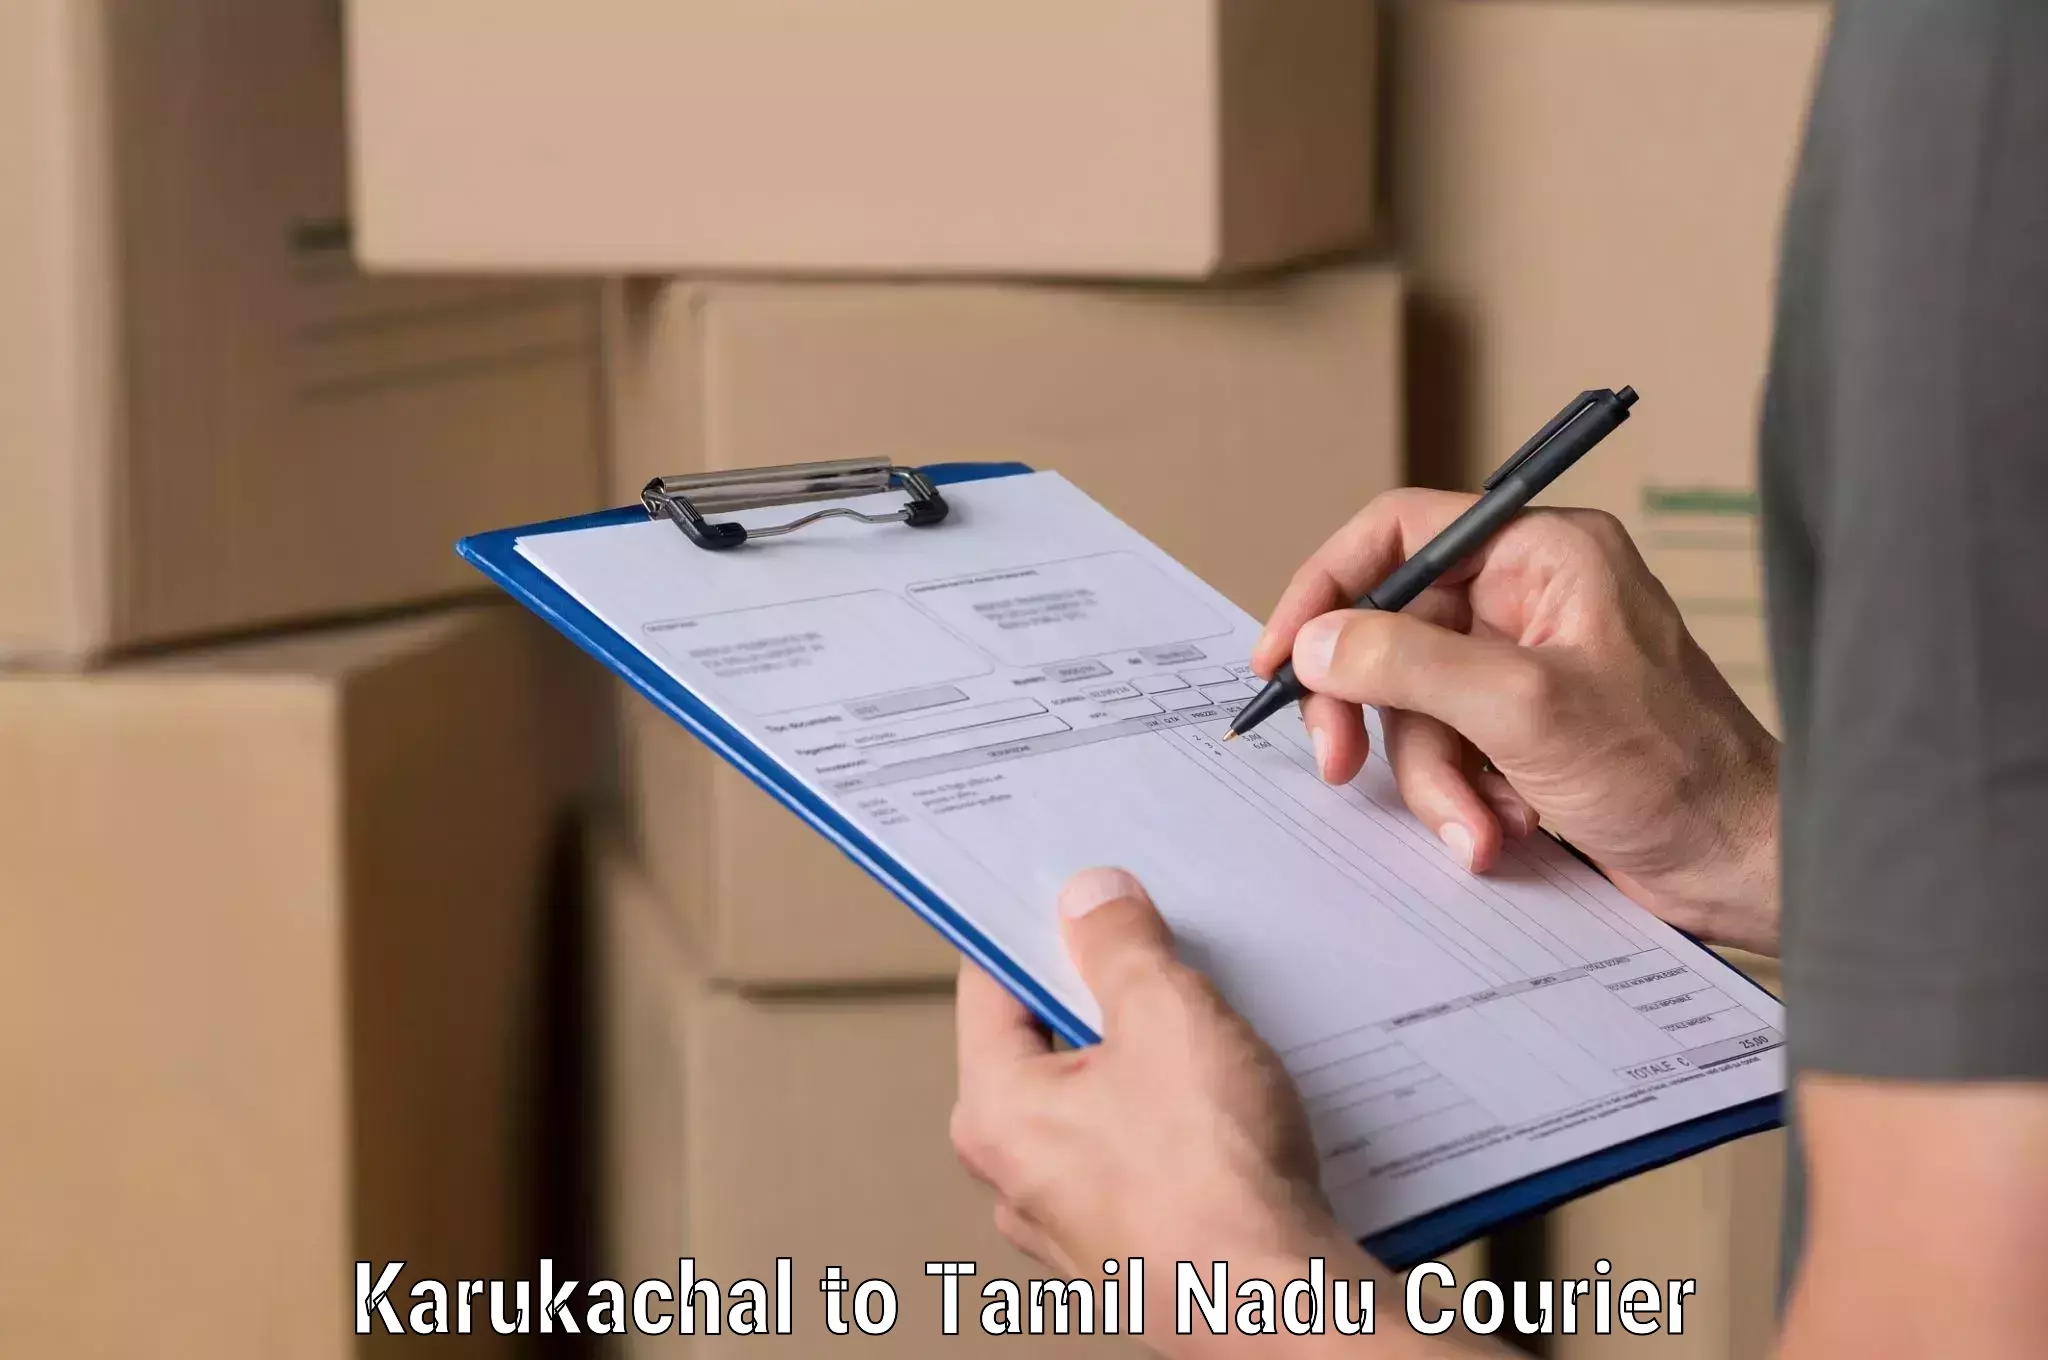 Customer-friendly courier services Karukachal to Perunali